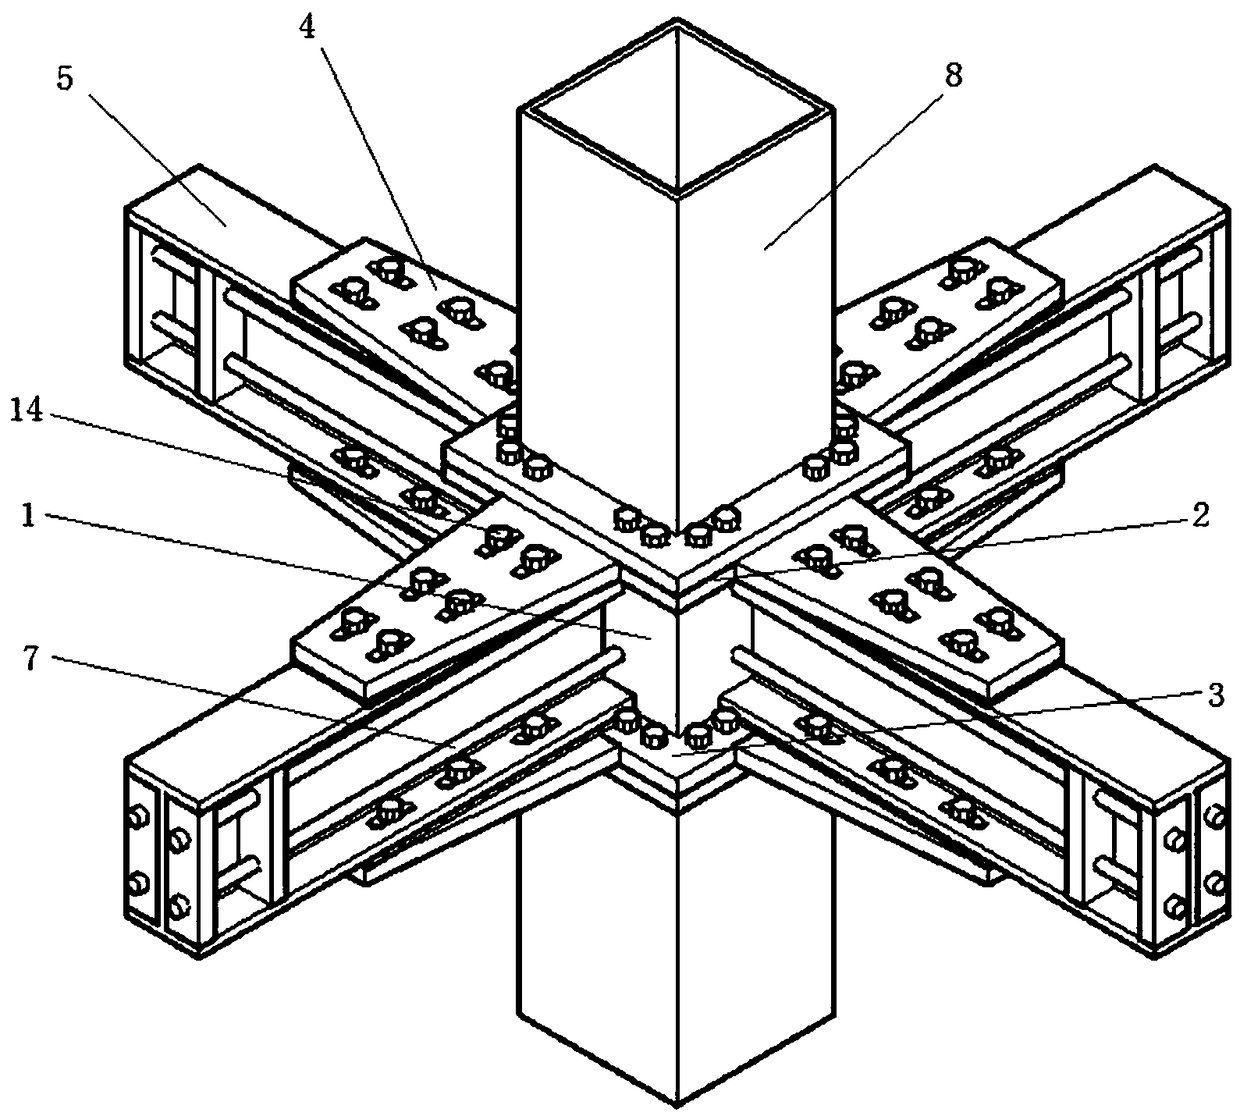 Prefabricated friction-energy-consuming self-resetting baffle communication node